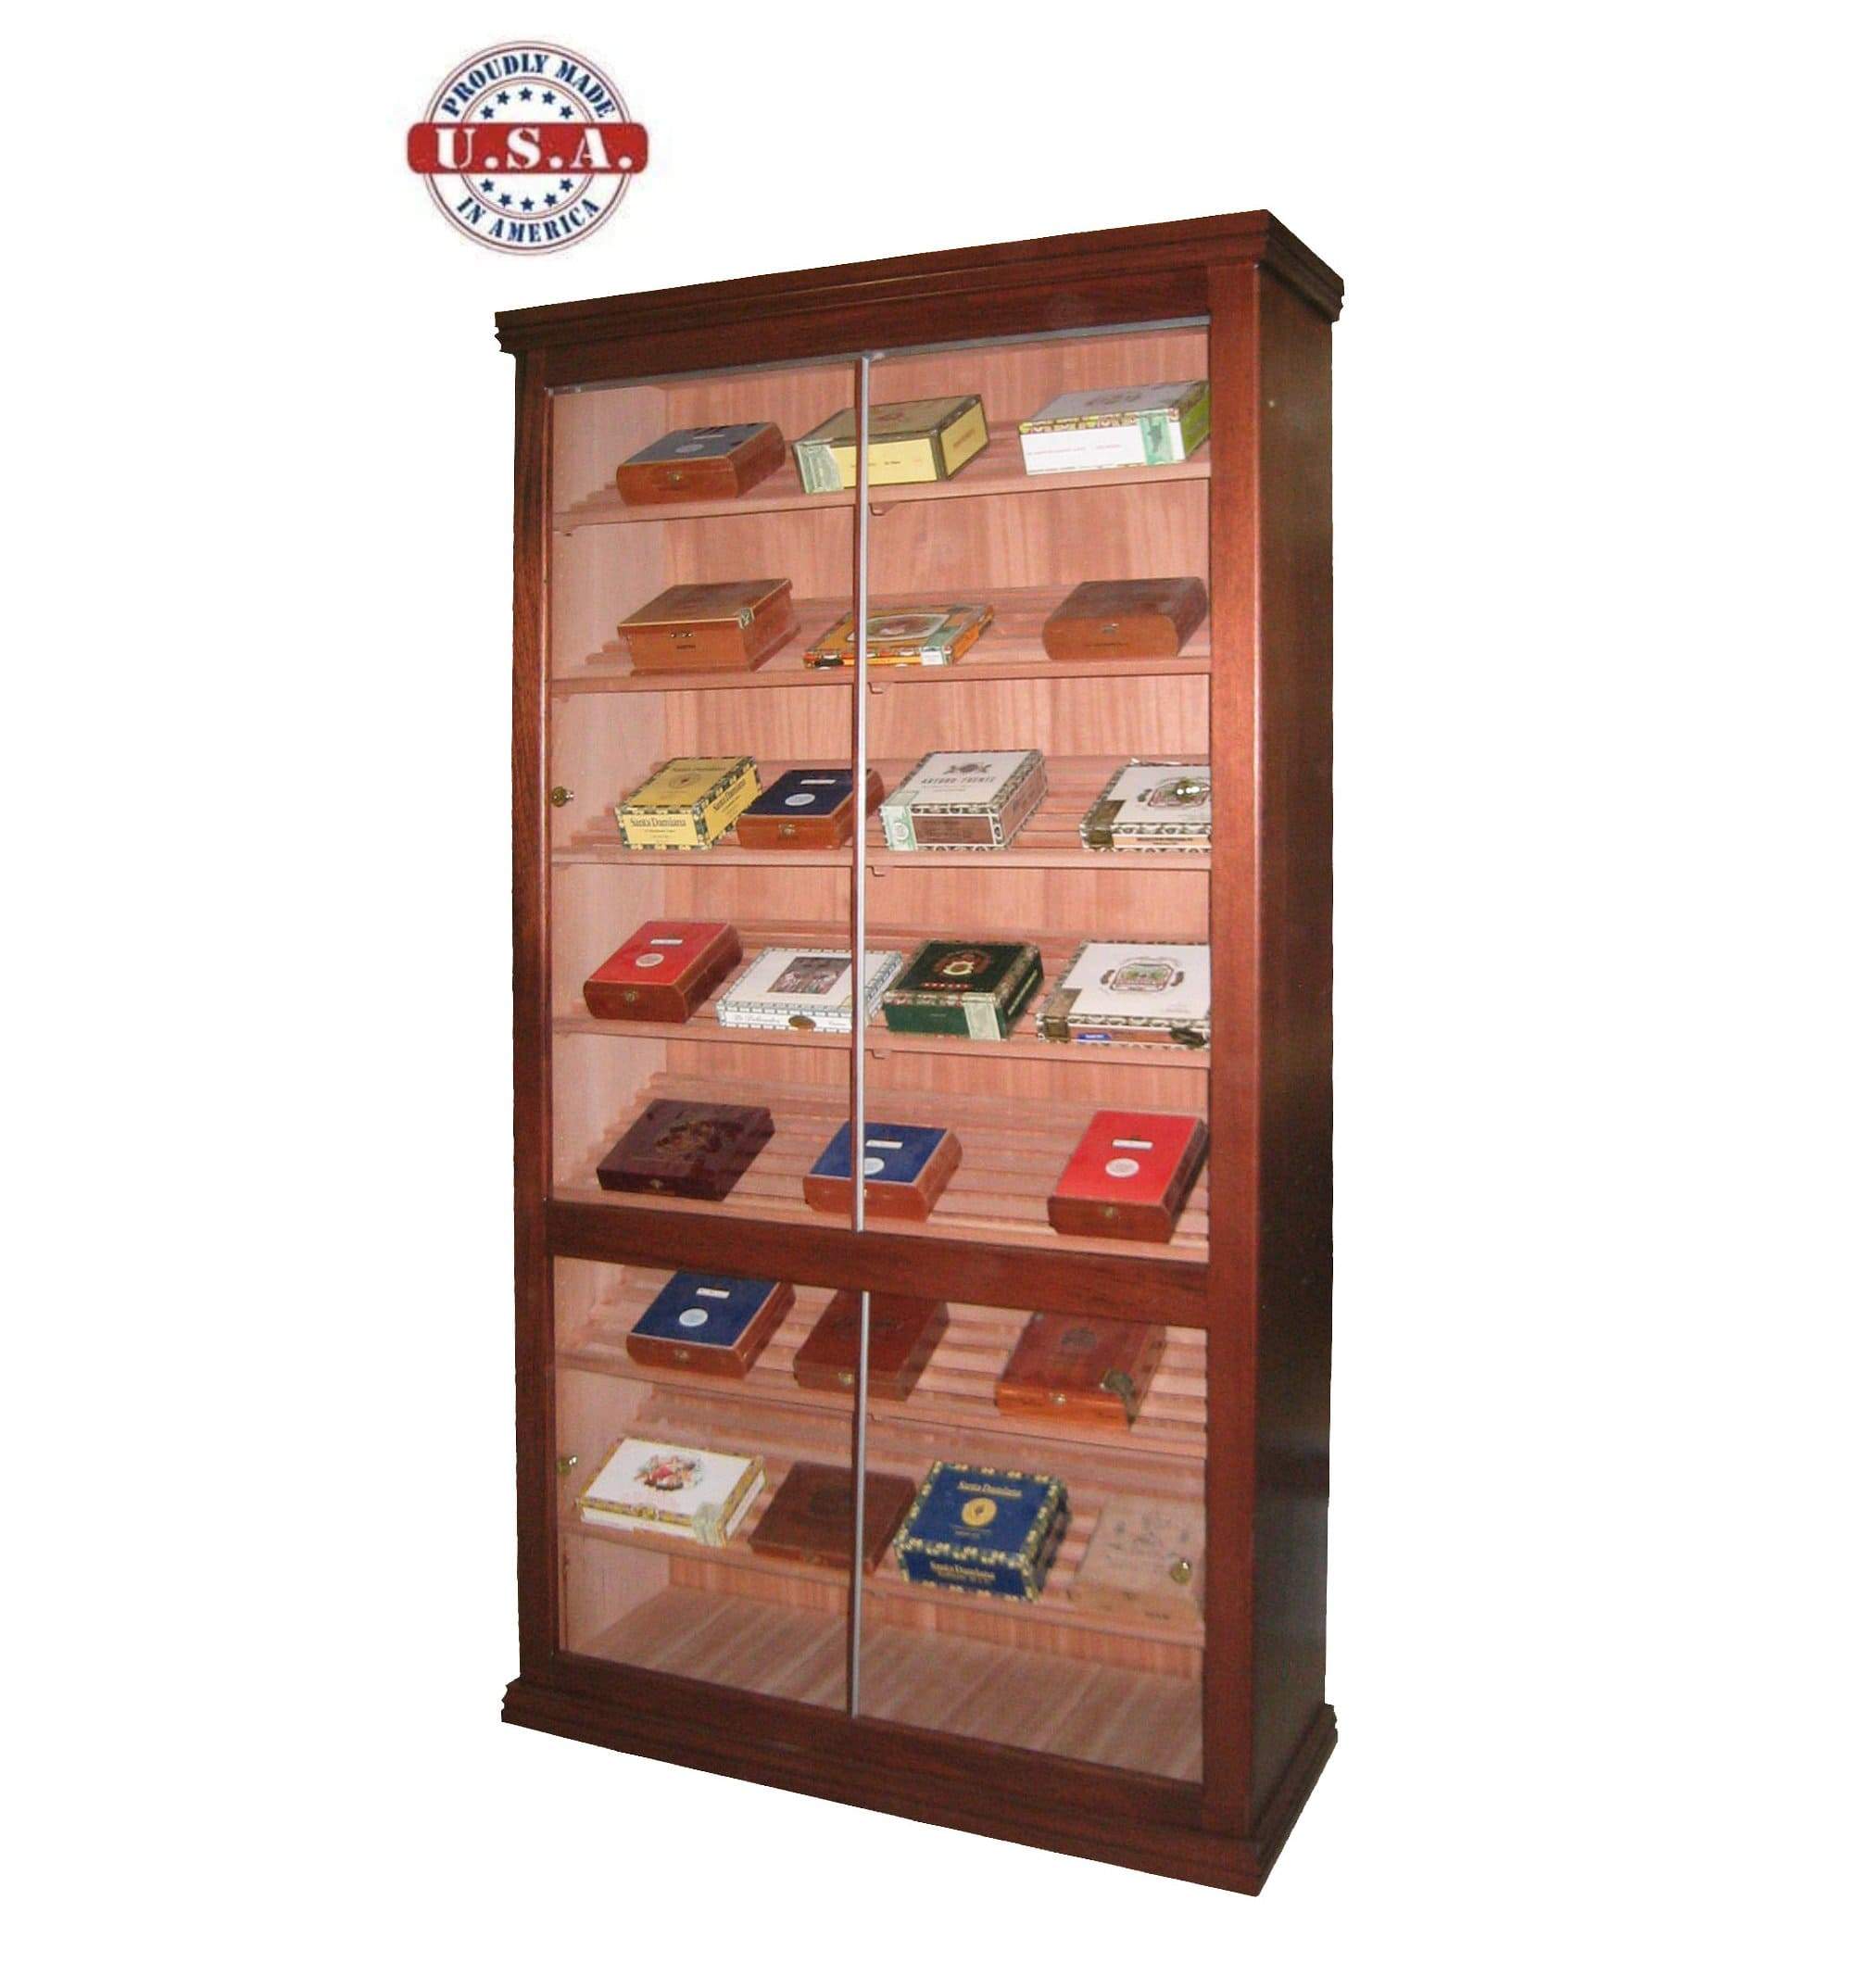 Model 4 Cigar Humidor Cabinet - Your Elegant Bar